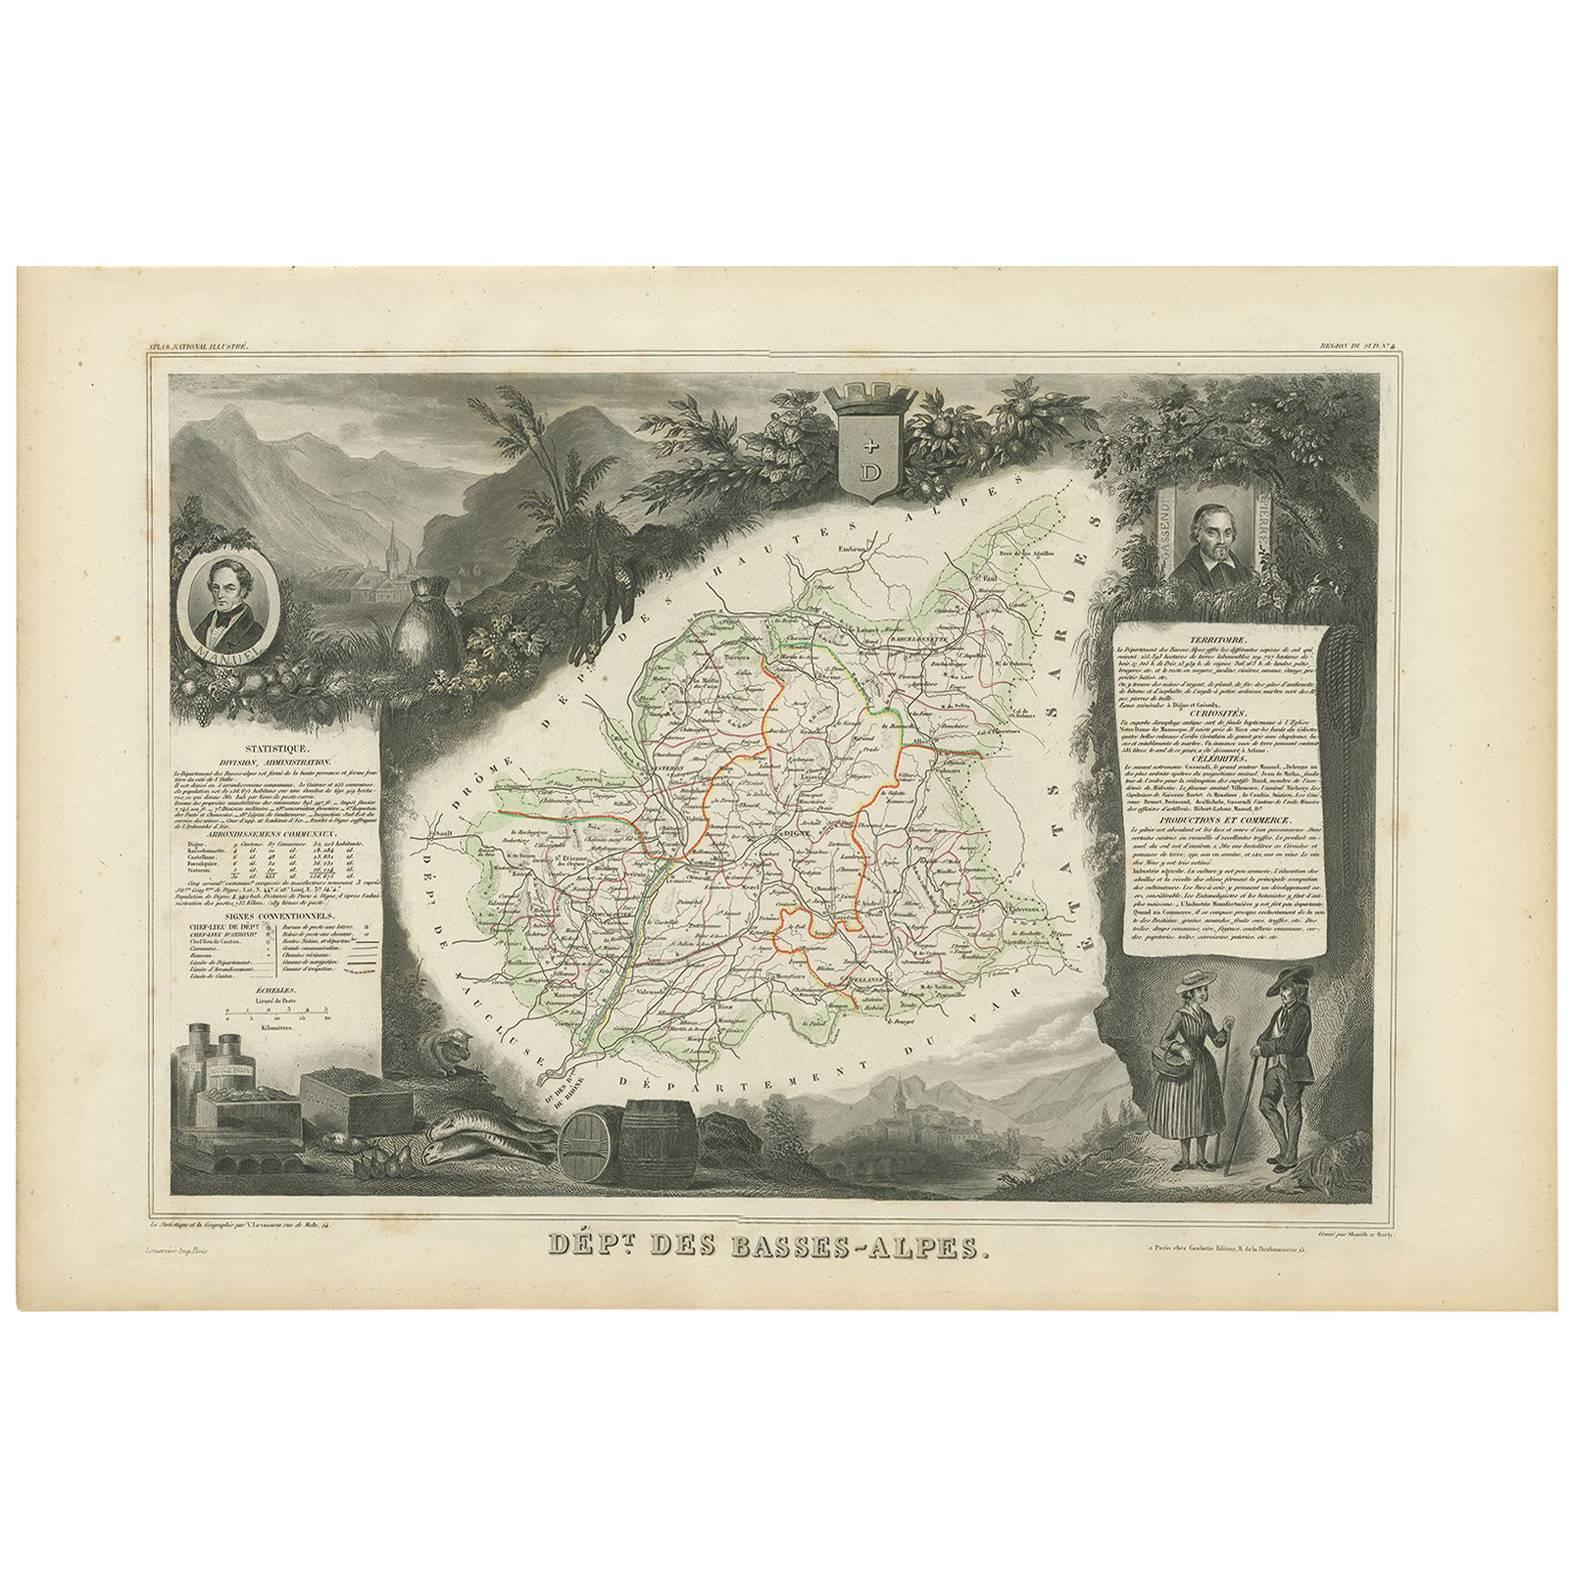 Antique Map of Basses-Alpes ‘France’ by V. Levasseur, 1854